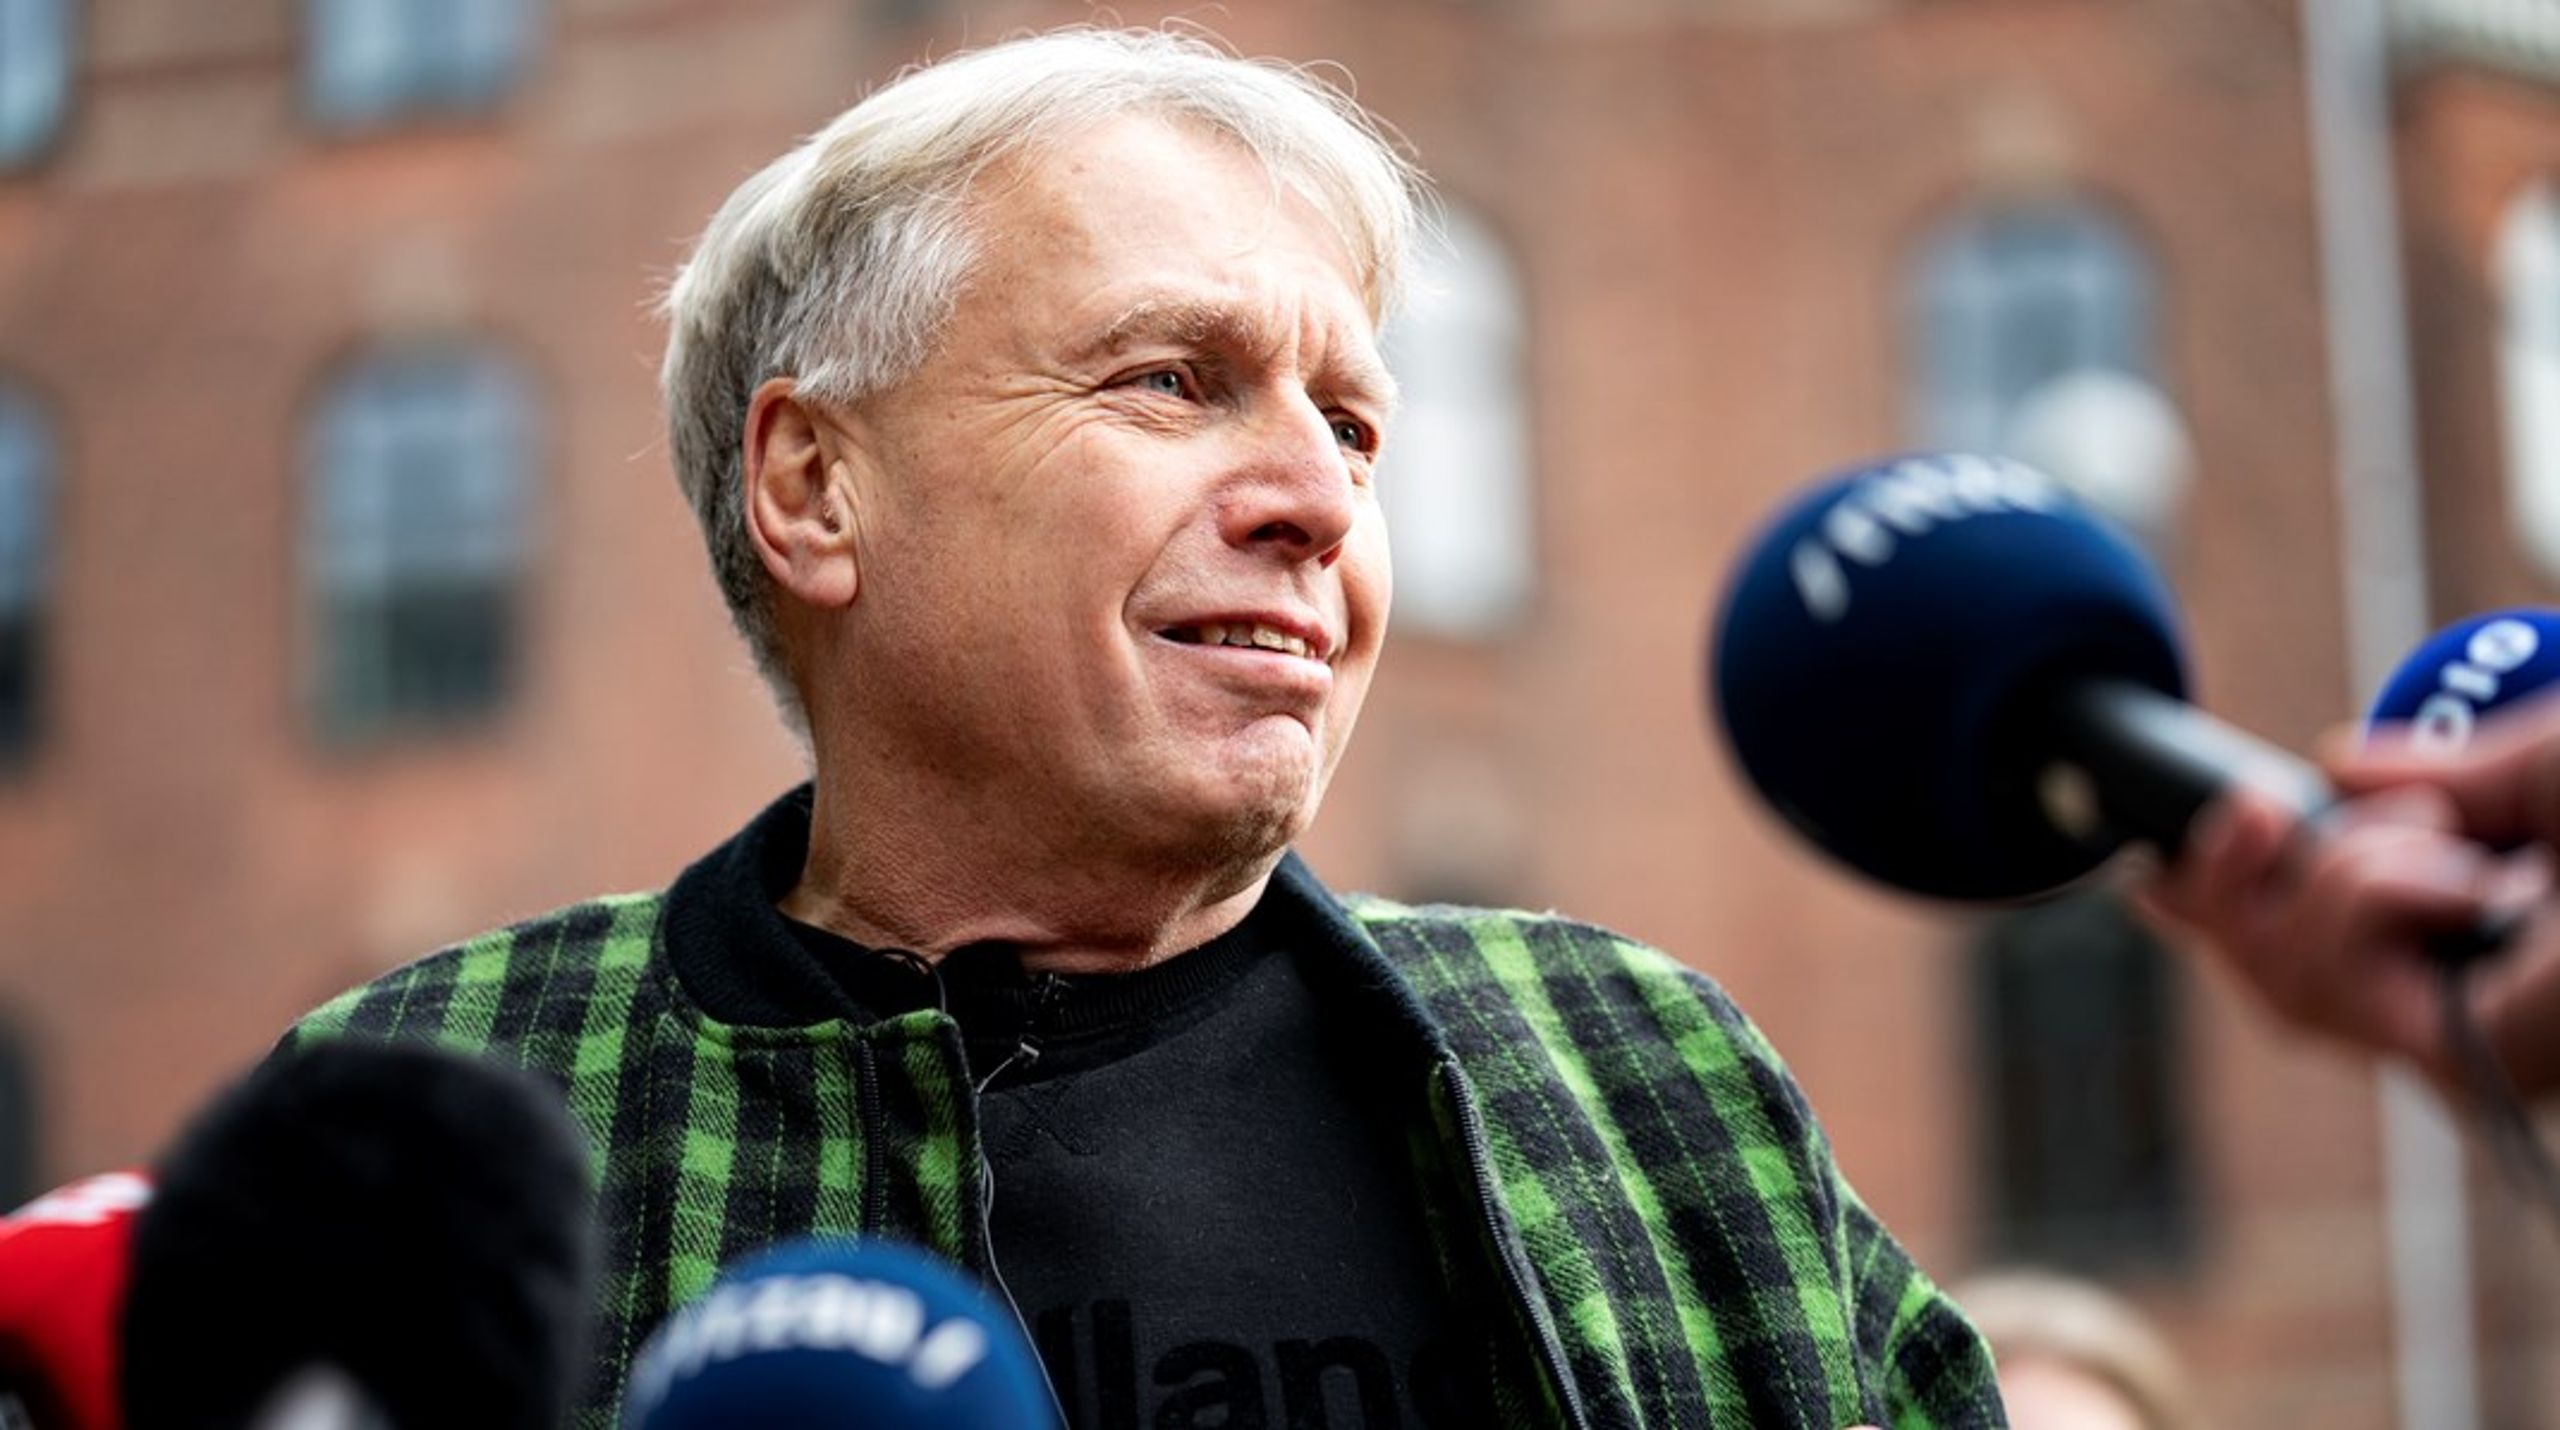 I foråret 2015 havde Elbæk dog indfanget en vælgerstrømning,&nbsp;men intern ballade og umulig ledelse fik snart bevægelsen til at forvitre, skriver Jarl Cordua.